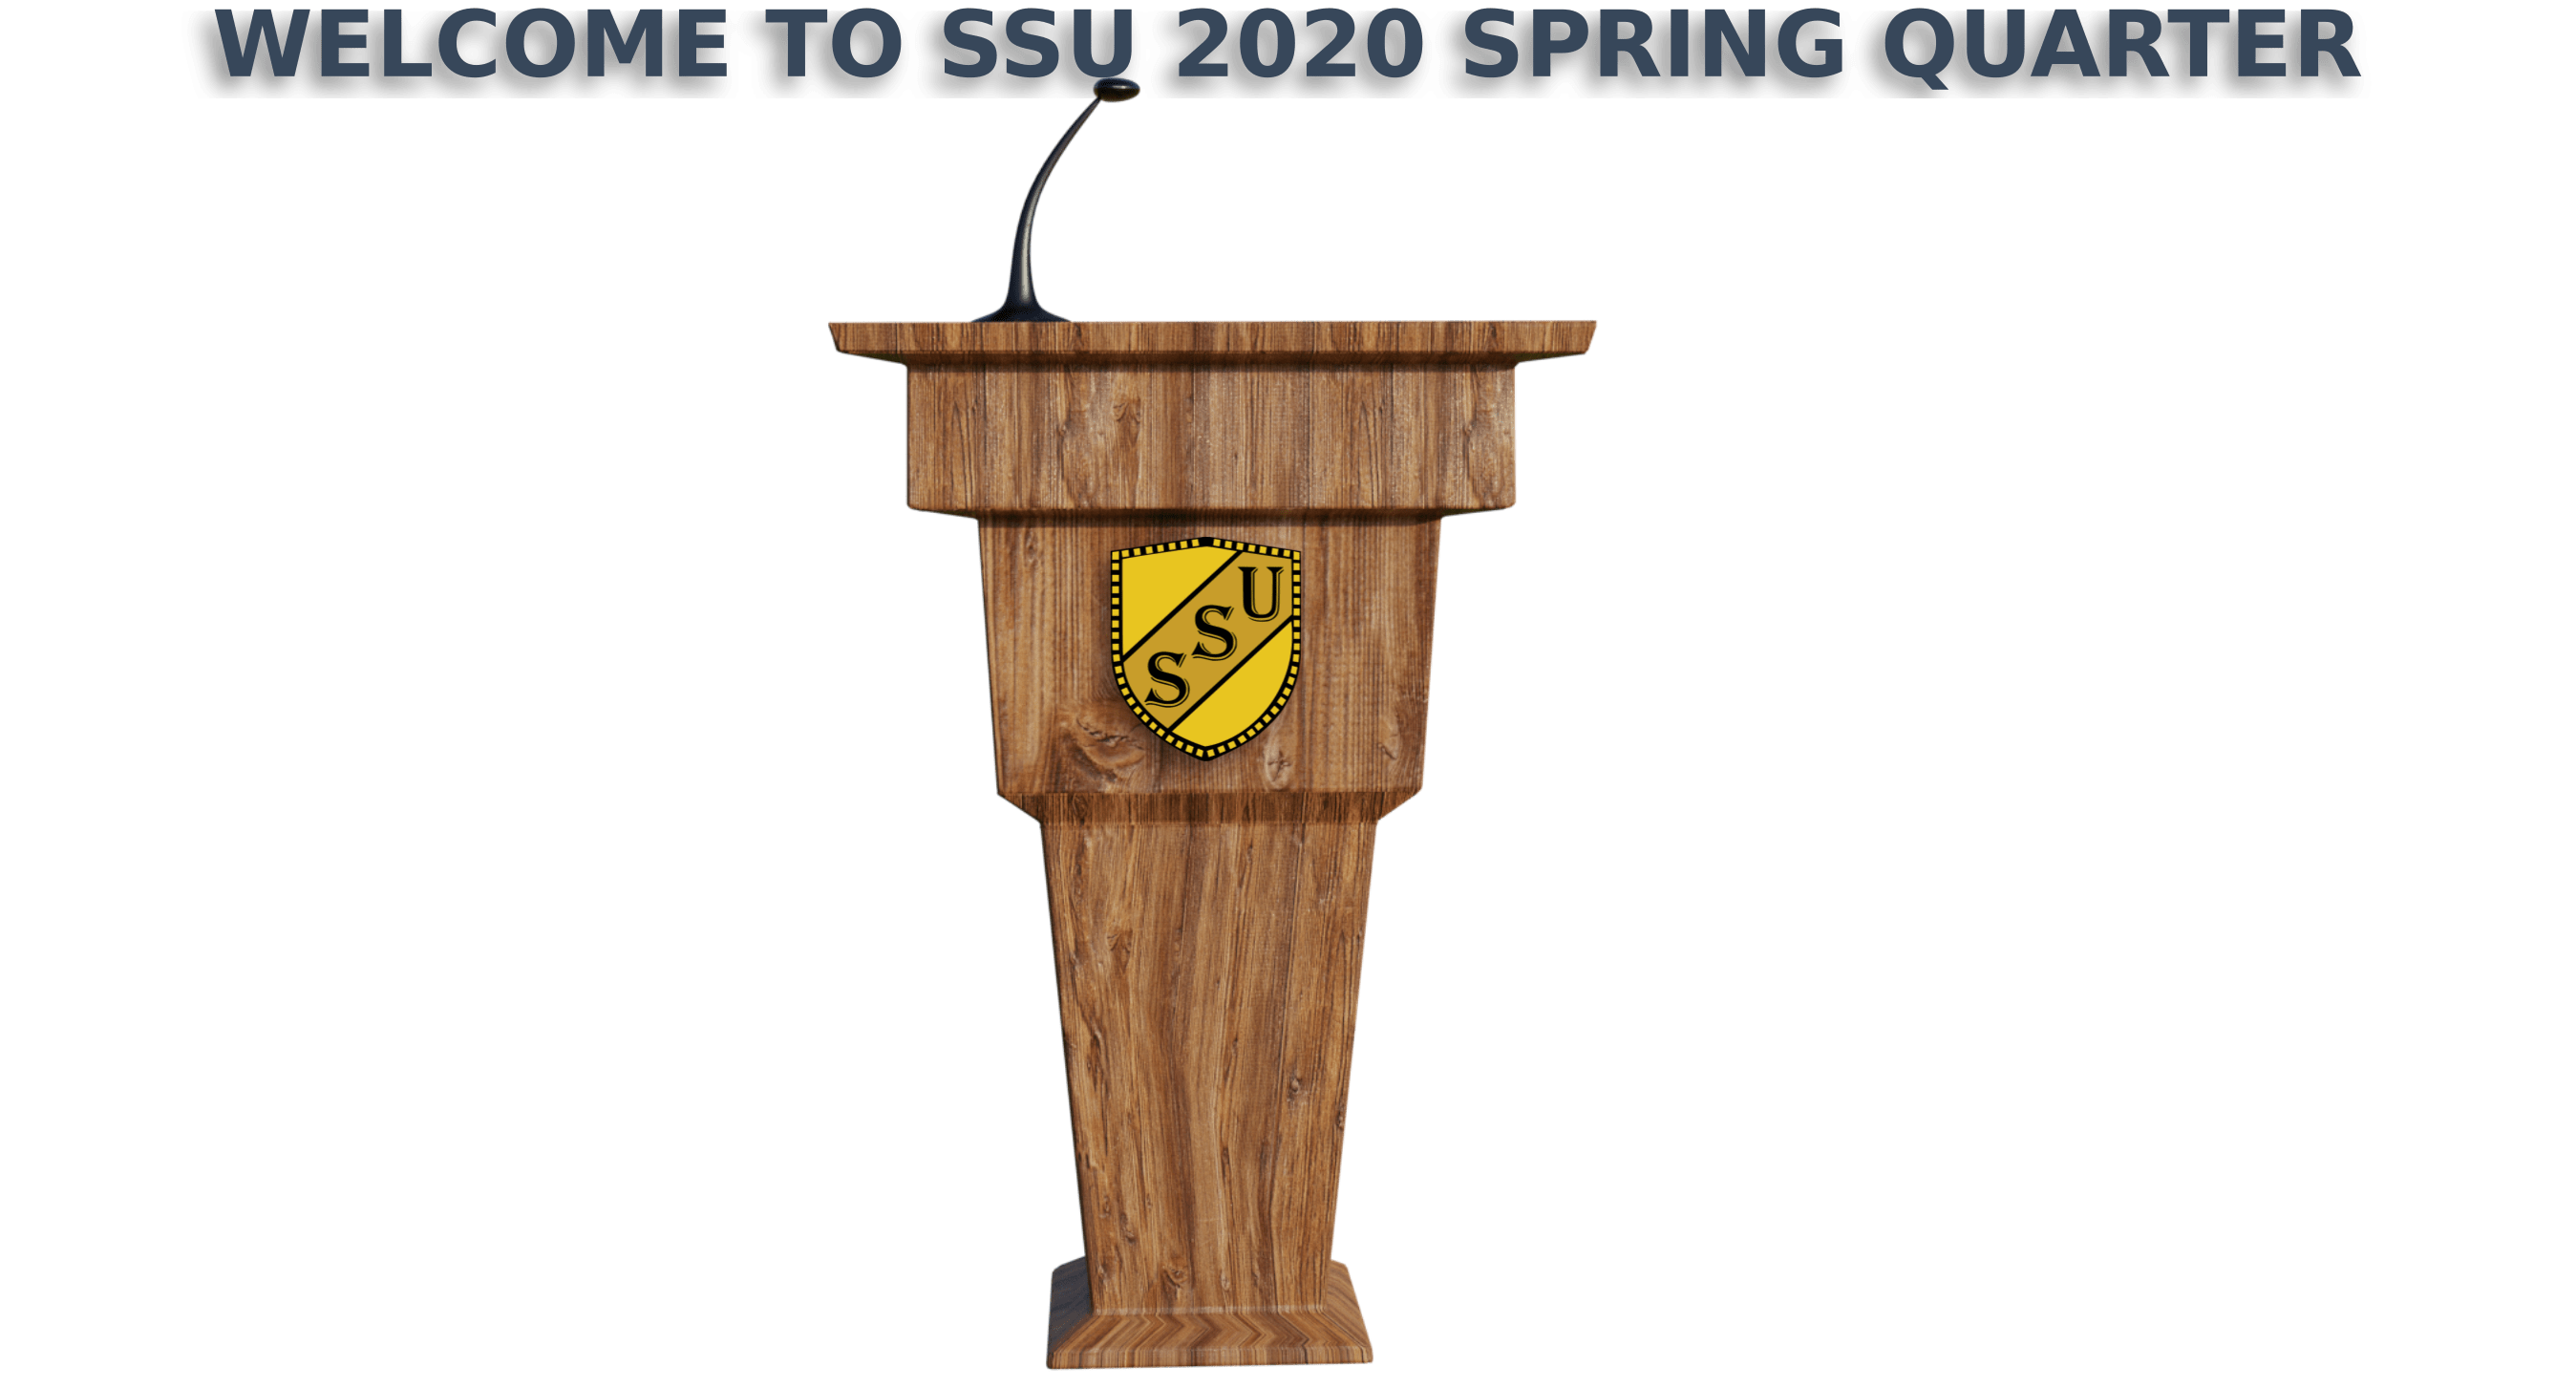 Welcome to SSU 2020 Spring Quarter SSU - Business Administration, BBA